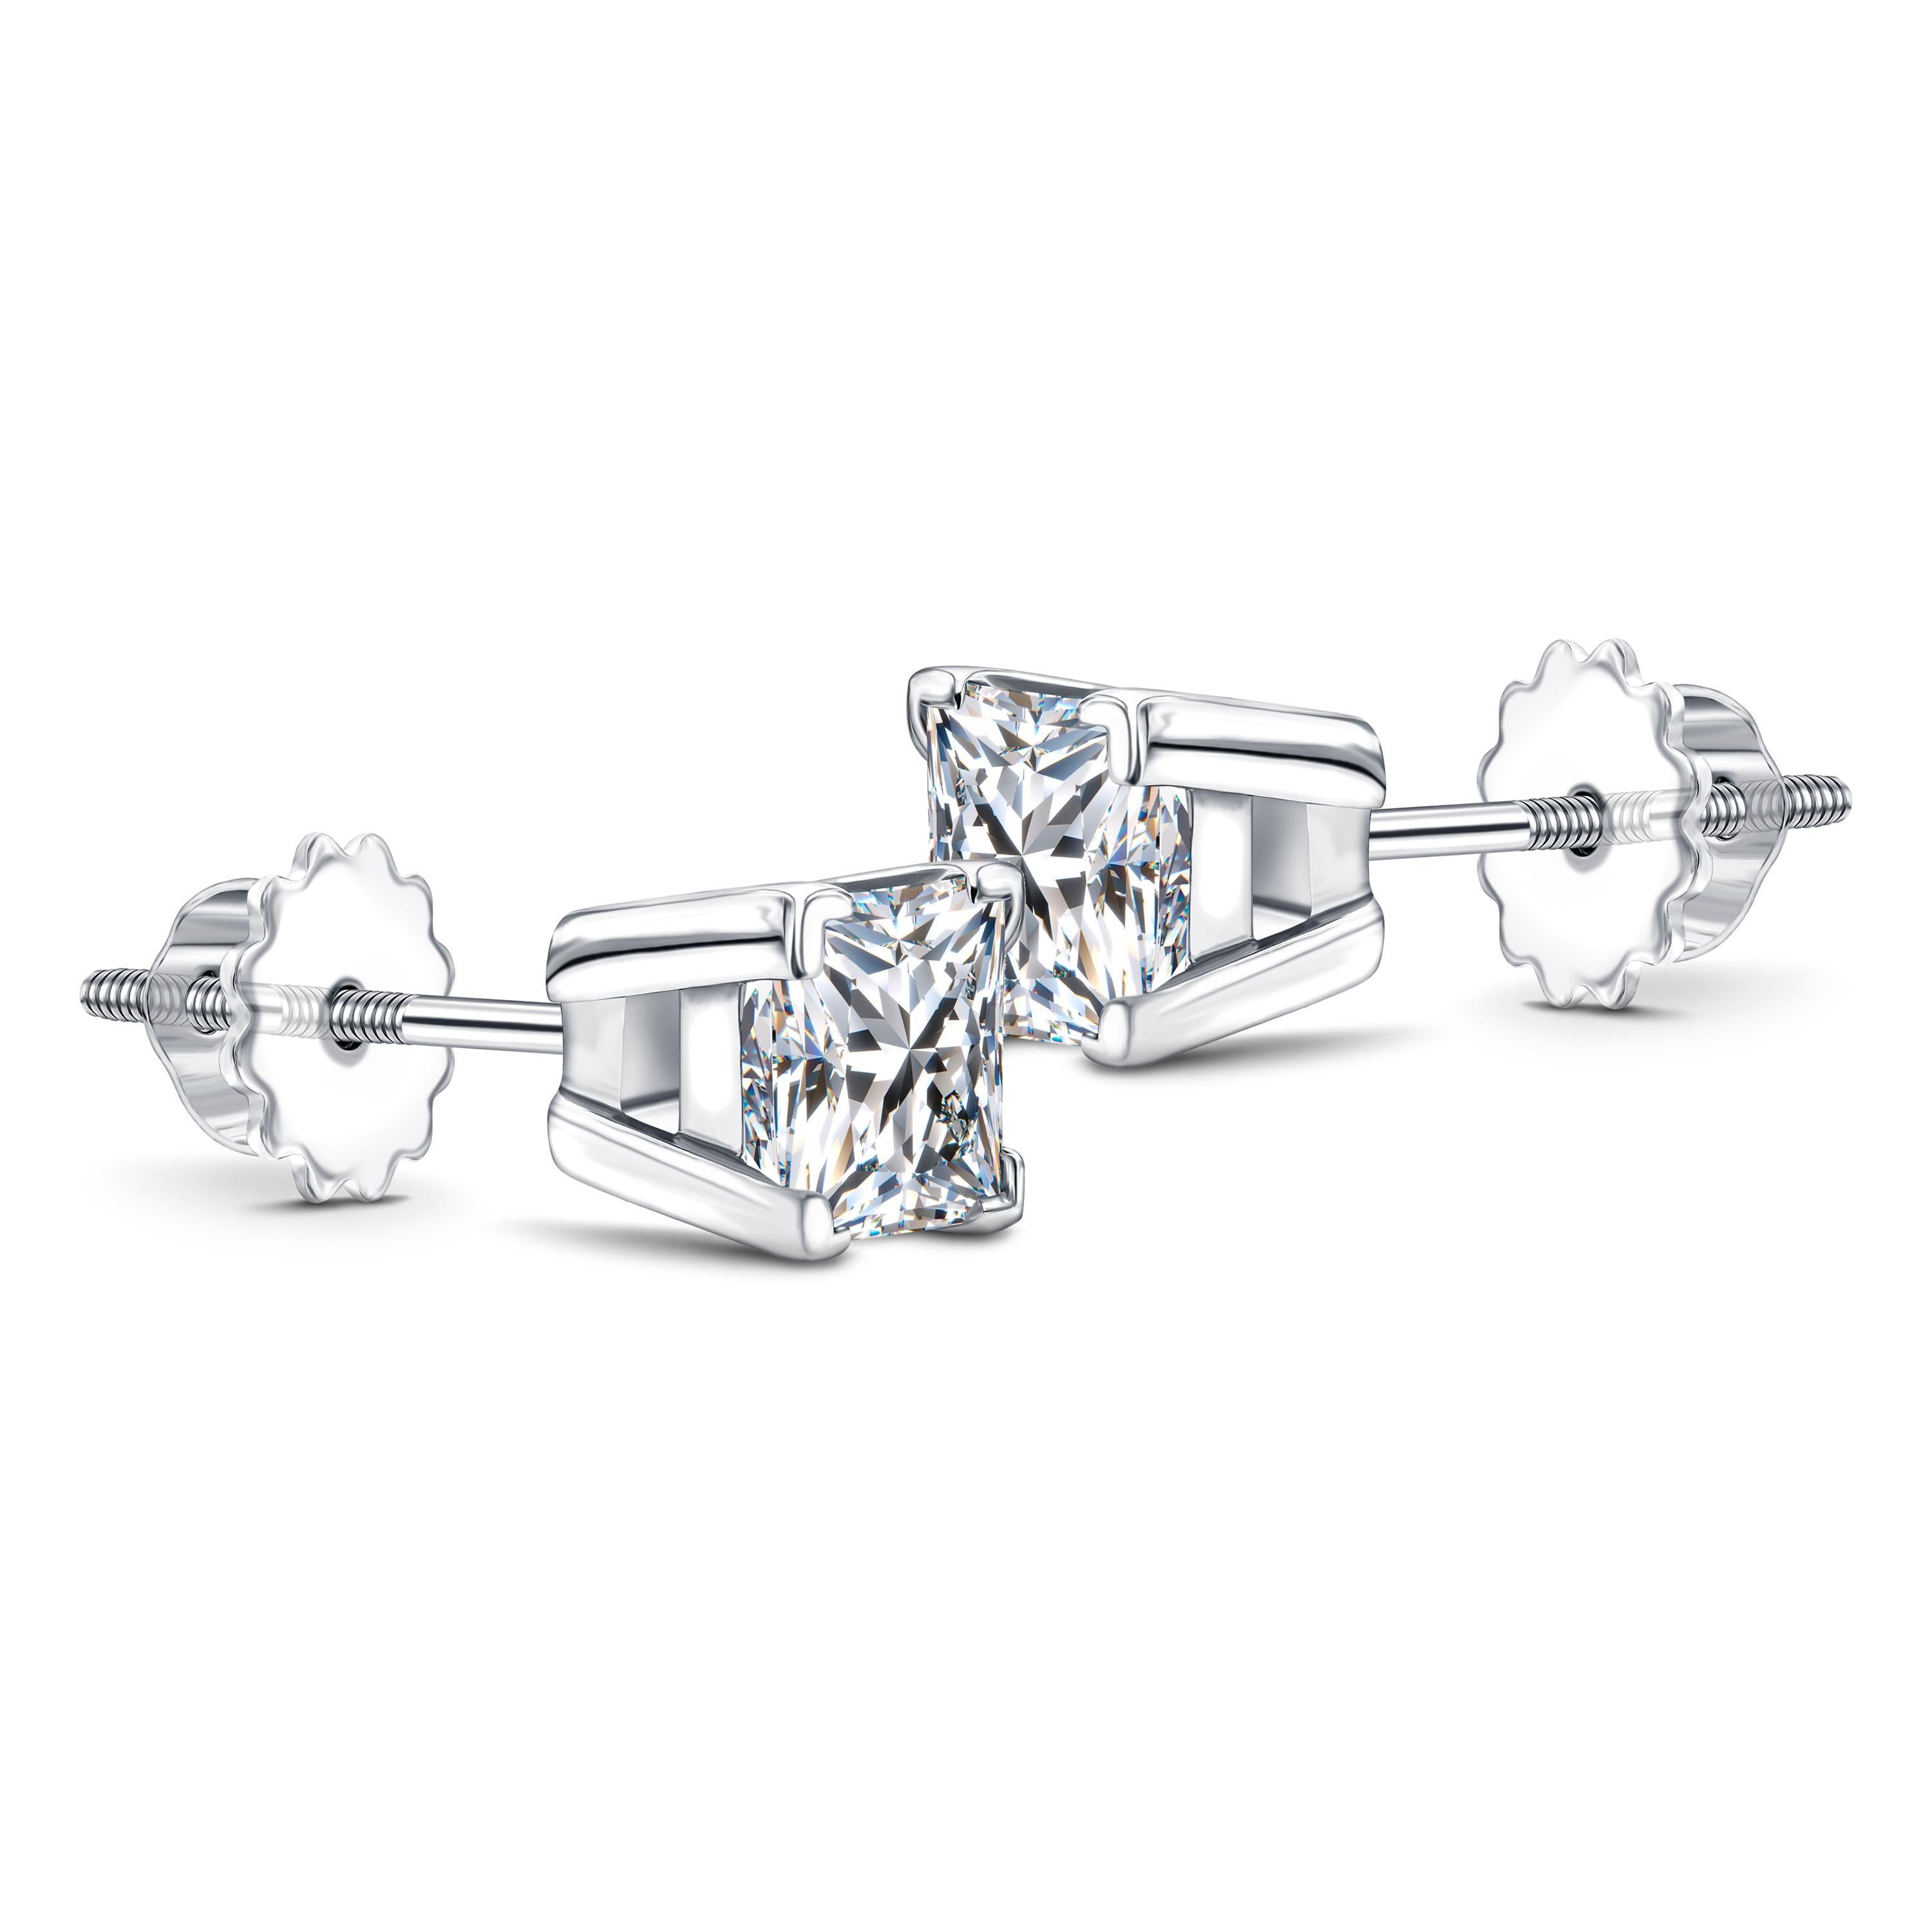 1.5 carat princess cut diamond earrings